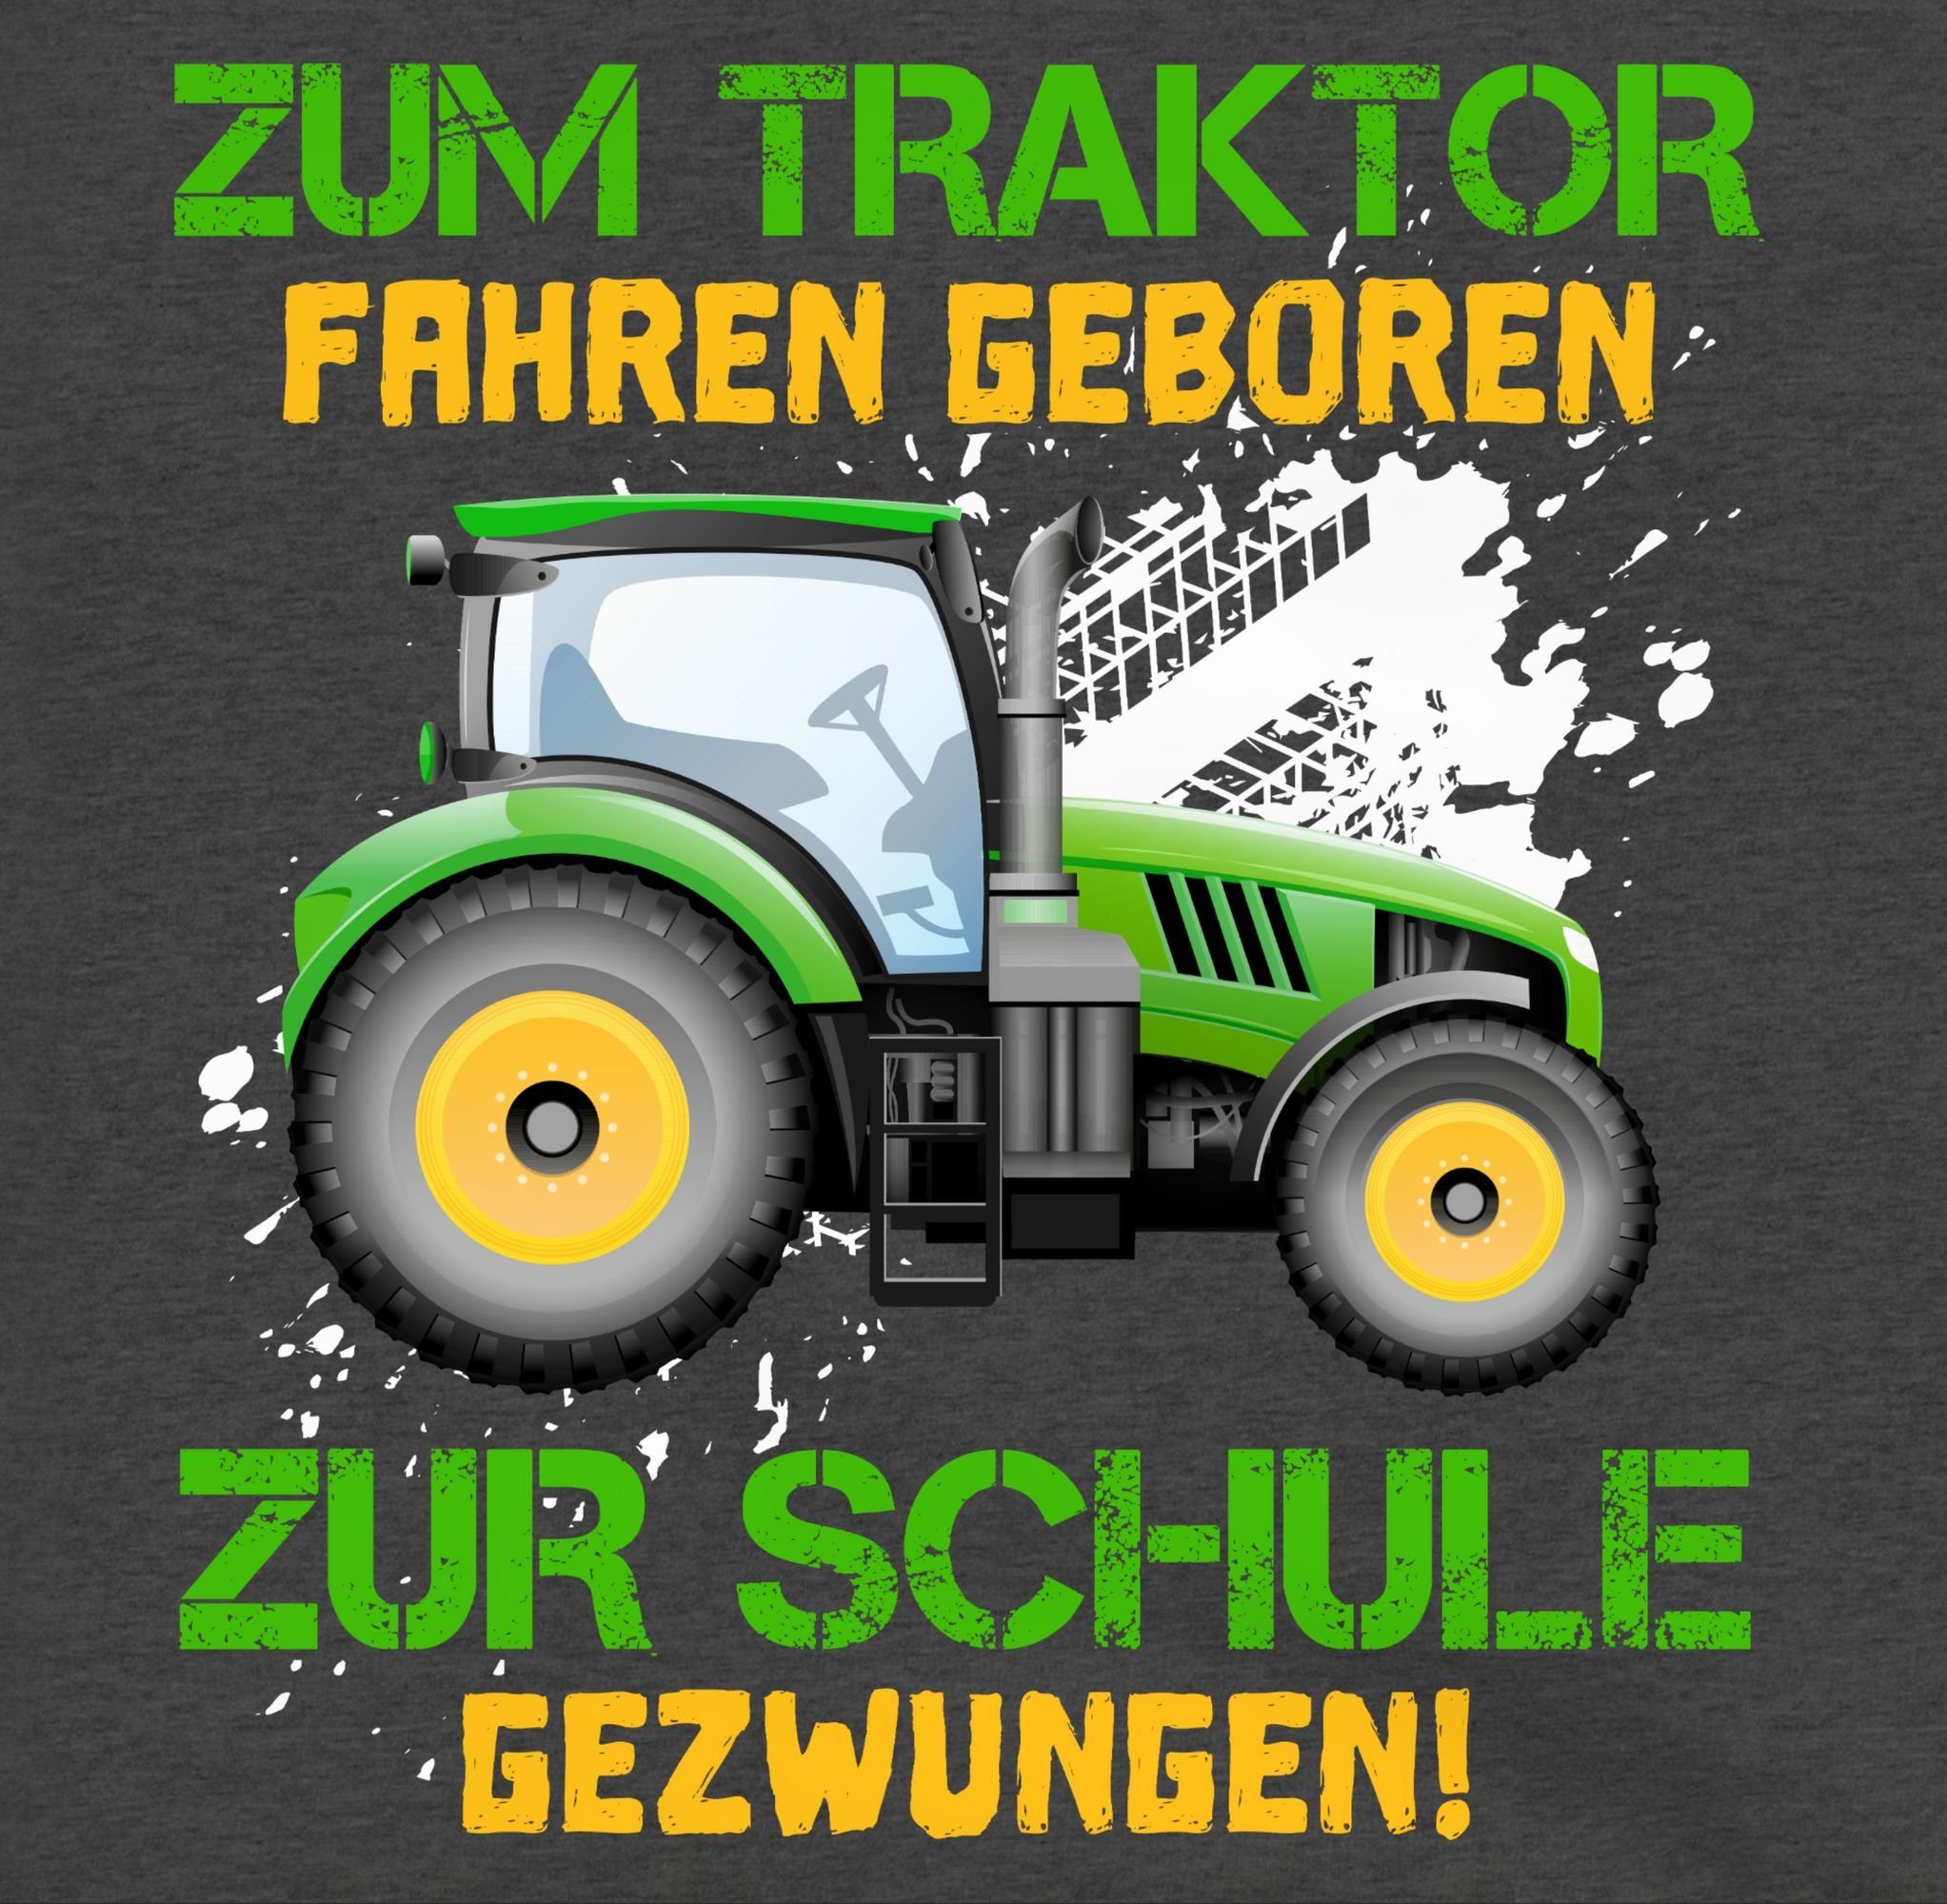 Baue gezwungen zur 3 Anthrazit meliert Landwirt Zum - Traktor Hoodie Schule Shirtracer Kinder fahren geboren Mädchen Einschulung